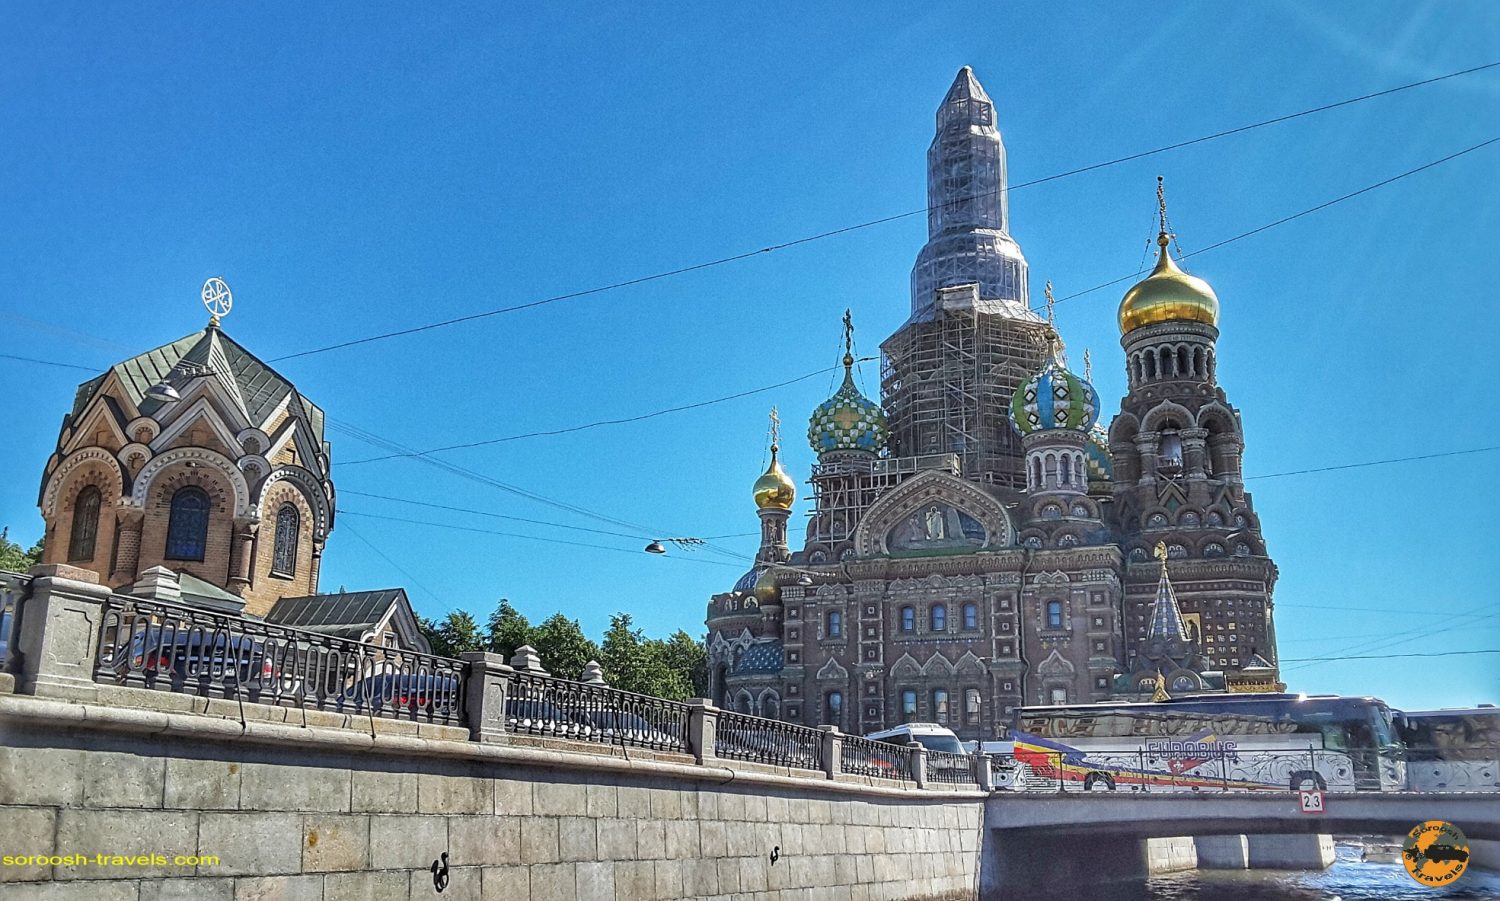 سنت پترزبورگ، روسیه - تابستان 1398 2019